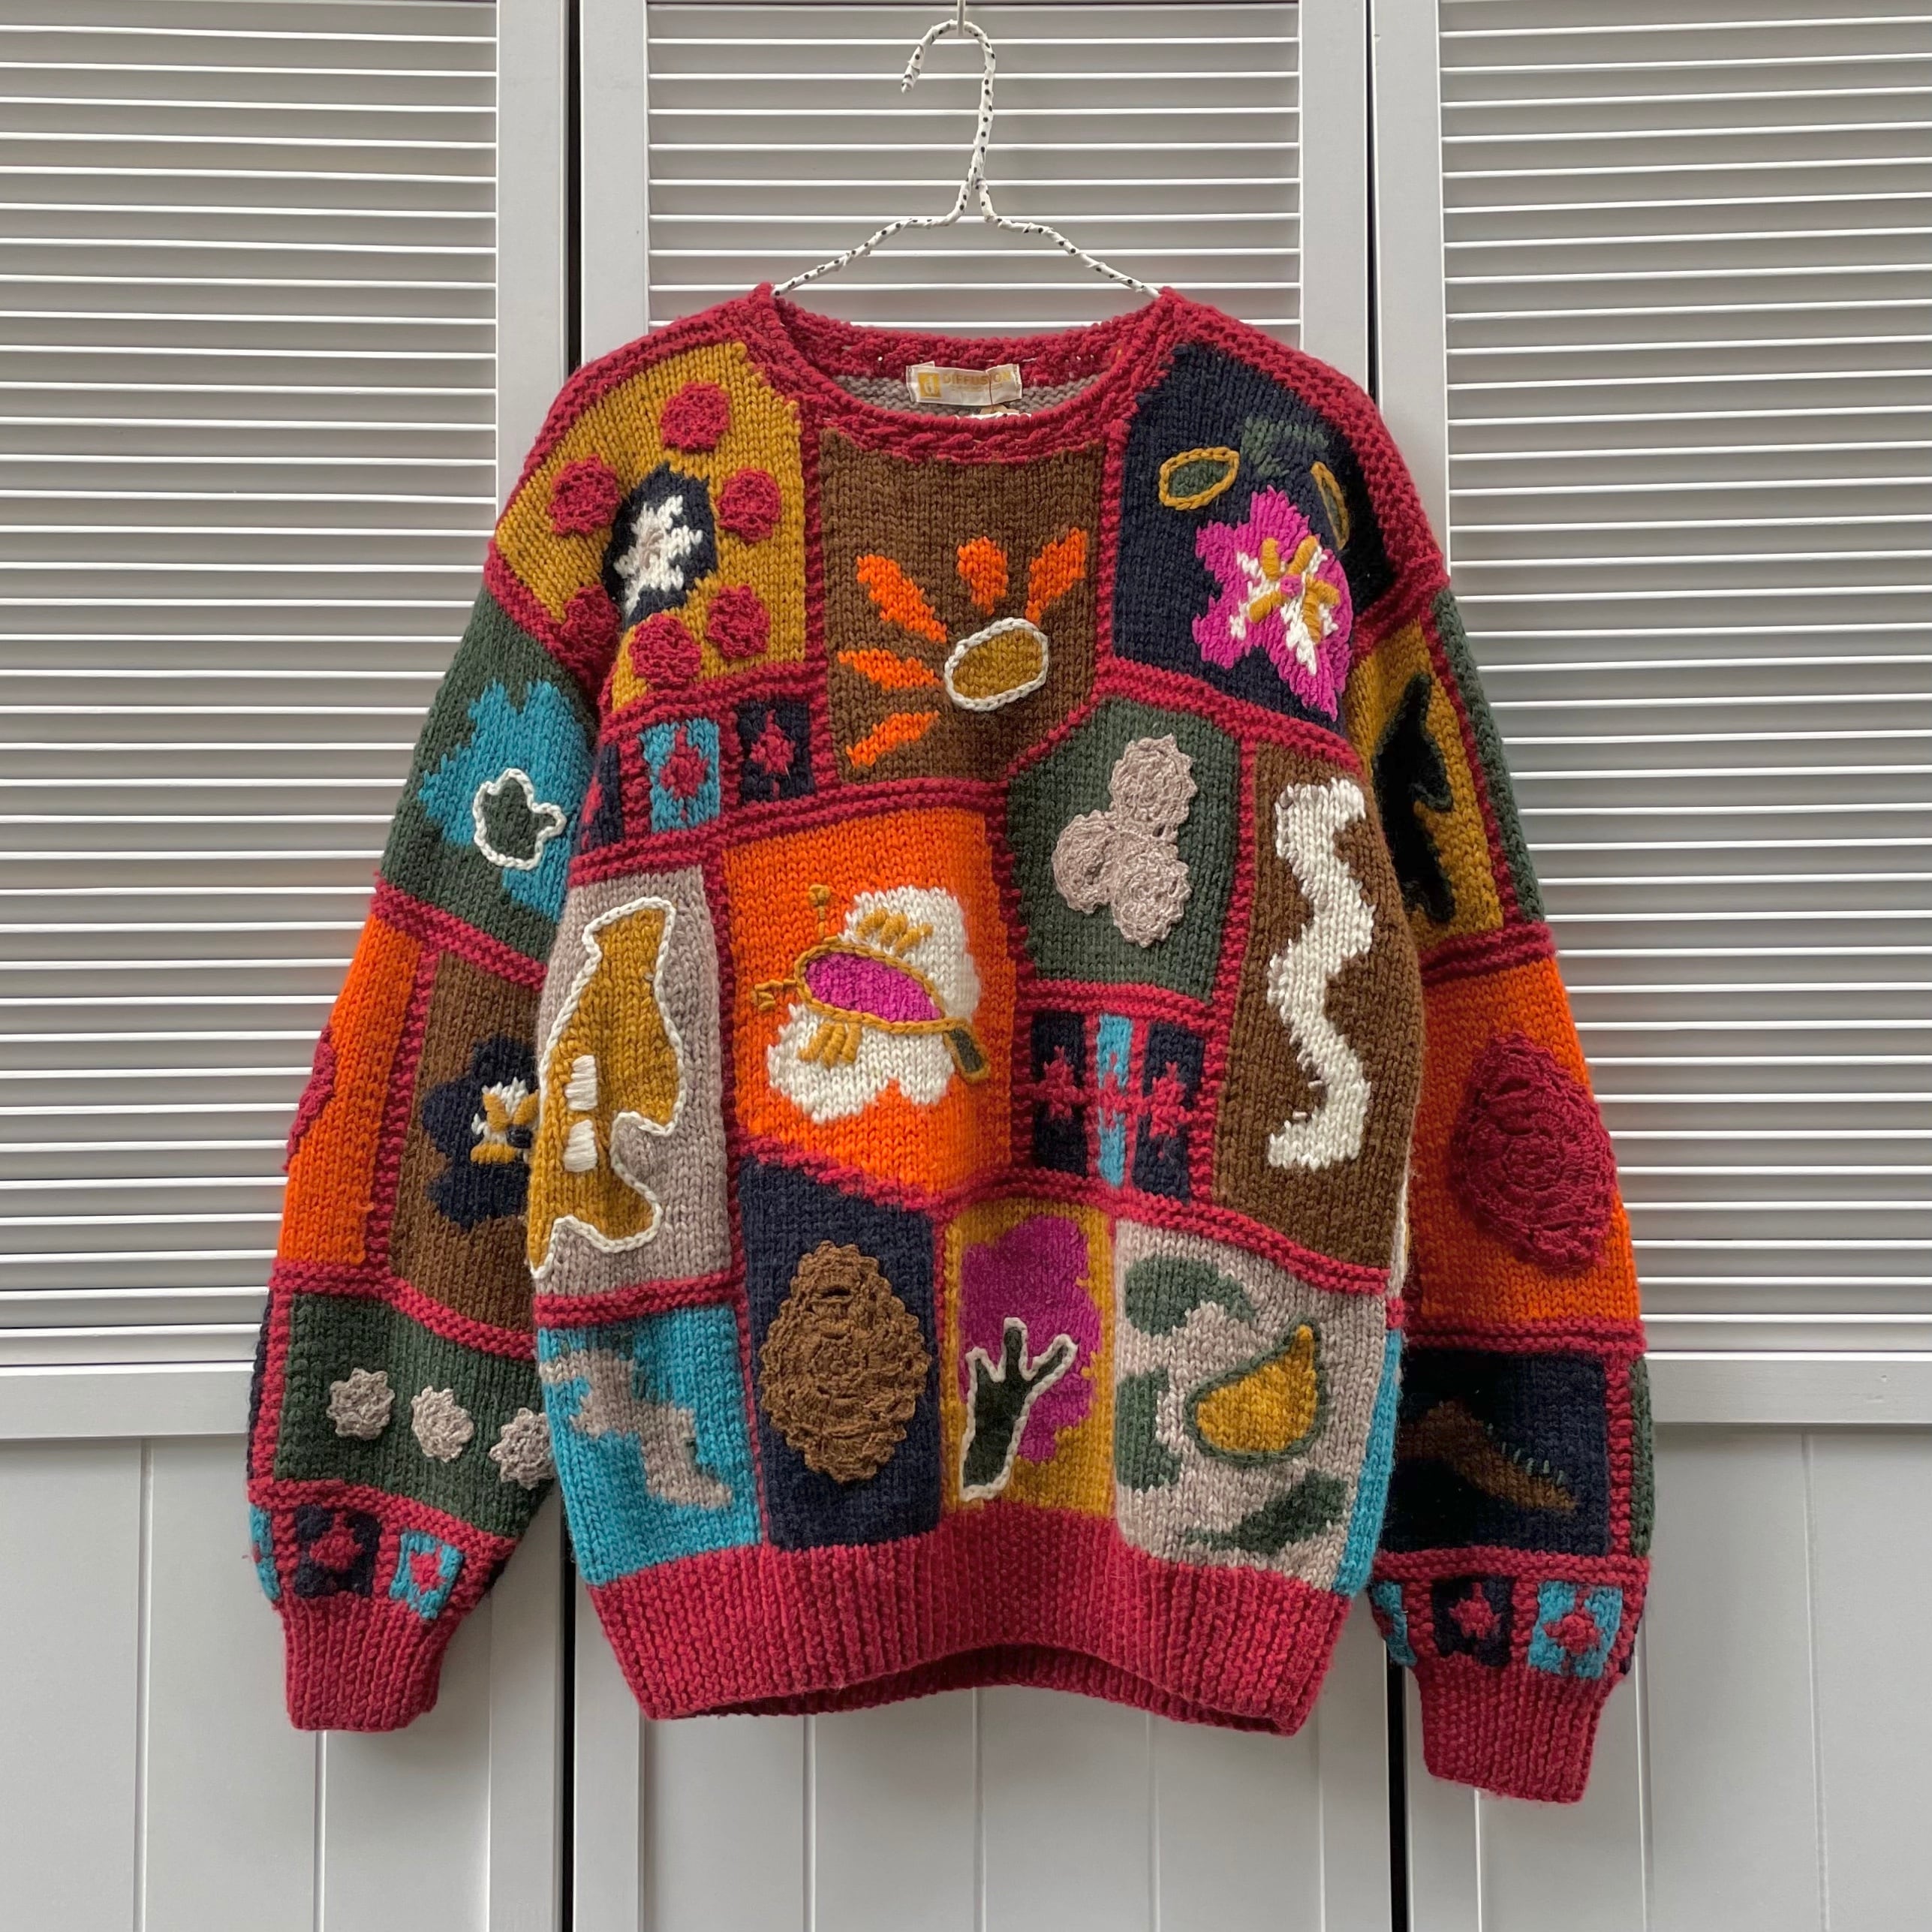 hand knit patchwork design sweater 〈レトロ古着 ハンドニット パッチワークデザインセーター 手編み カラフル  派手〉 RiLOU〈リル〉